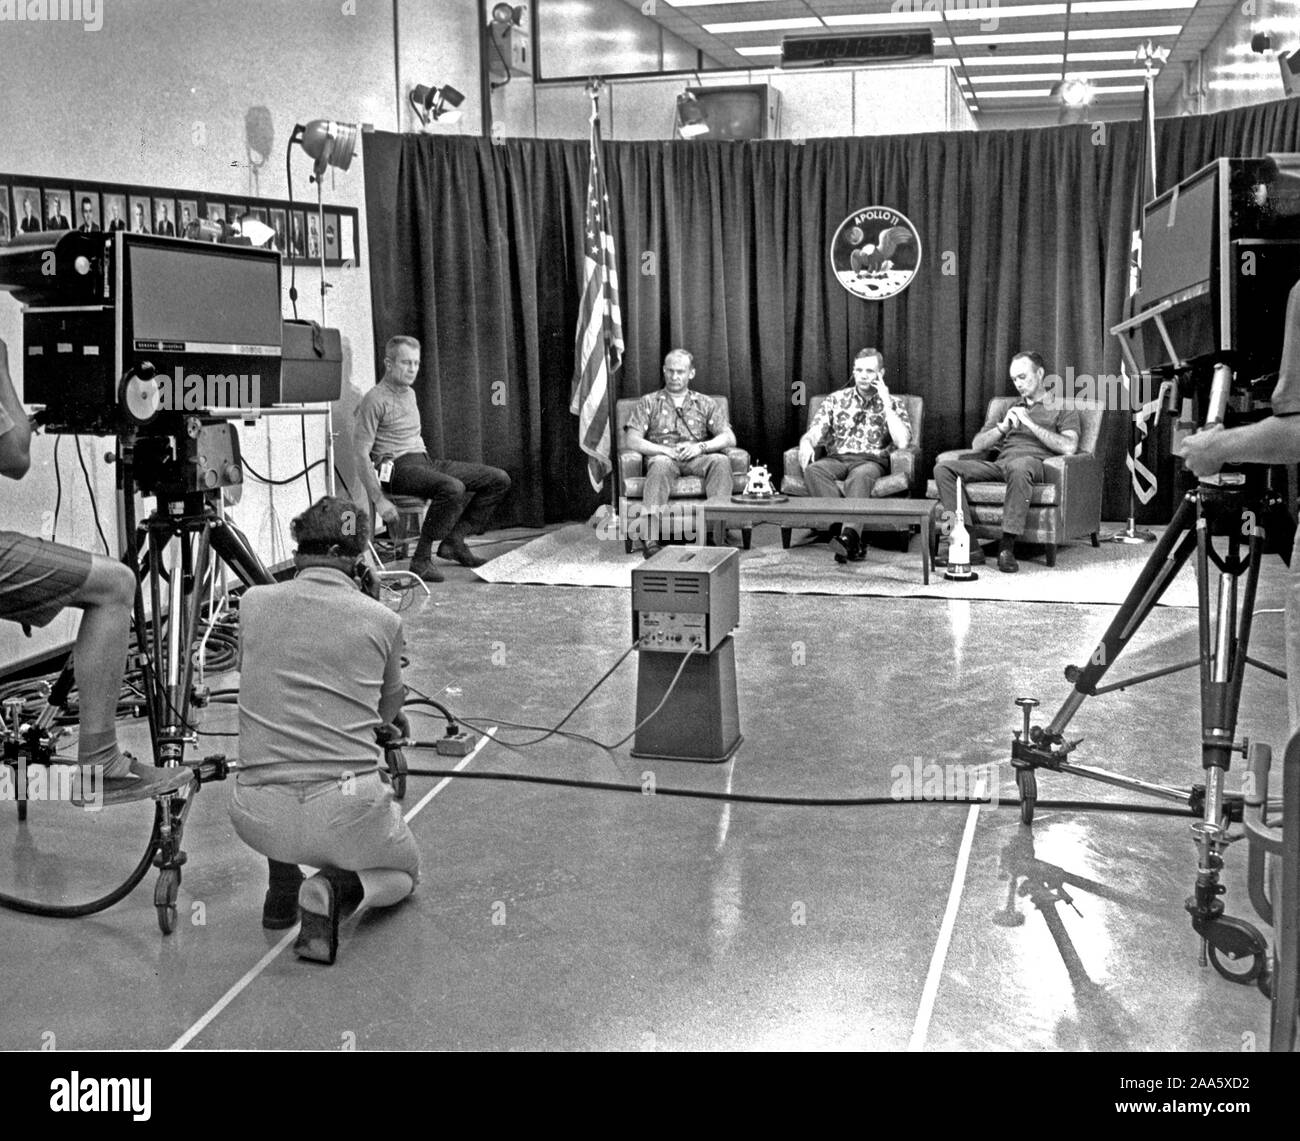 Die Nacht vor dem Tag der Einführung, Apollo 11 Crew Mitglieder (R-L) Michael Collins, Neil Armstrong und Edwin Aldrin, in einem geschlossenen Kreislauf Pressekonferenz nahmen die Nacht, bevor sie ihre historischen Mondlandung Sendung begann. Zu weit links ist Chief Astronaut und Direktor der Flight Crew Operations, Donald K. Slayton. Stockfoto